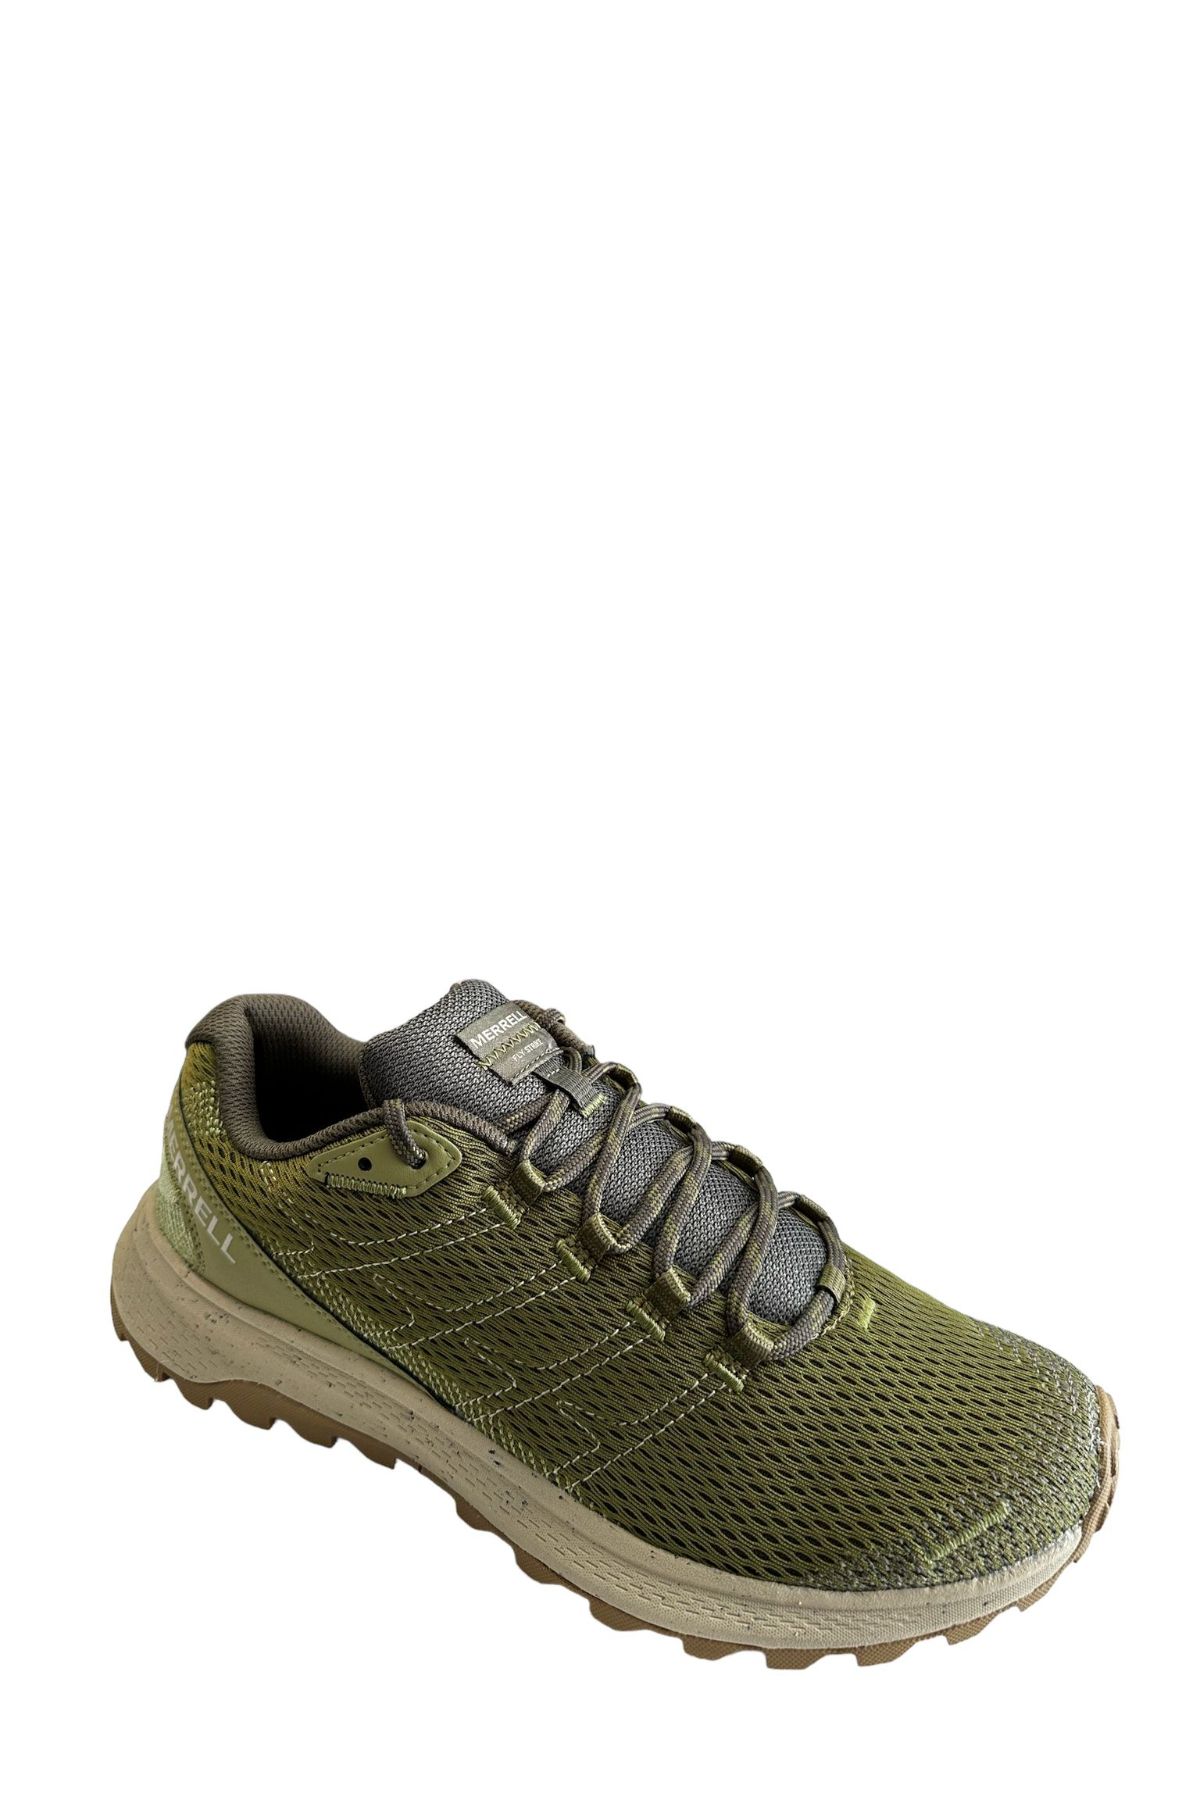 Merrell J068131 Fly Strıke Erkek Spor Ayakkabısı Yeşil